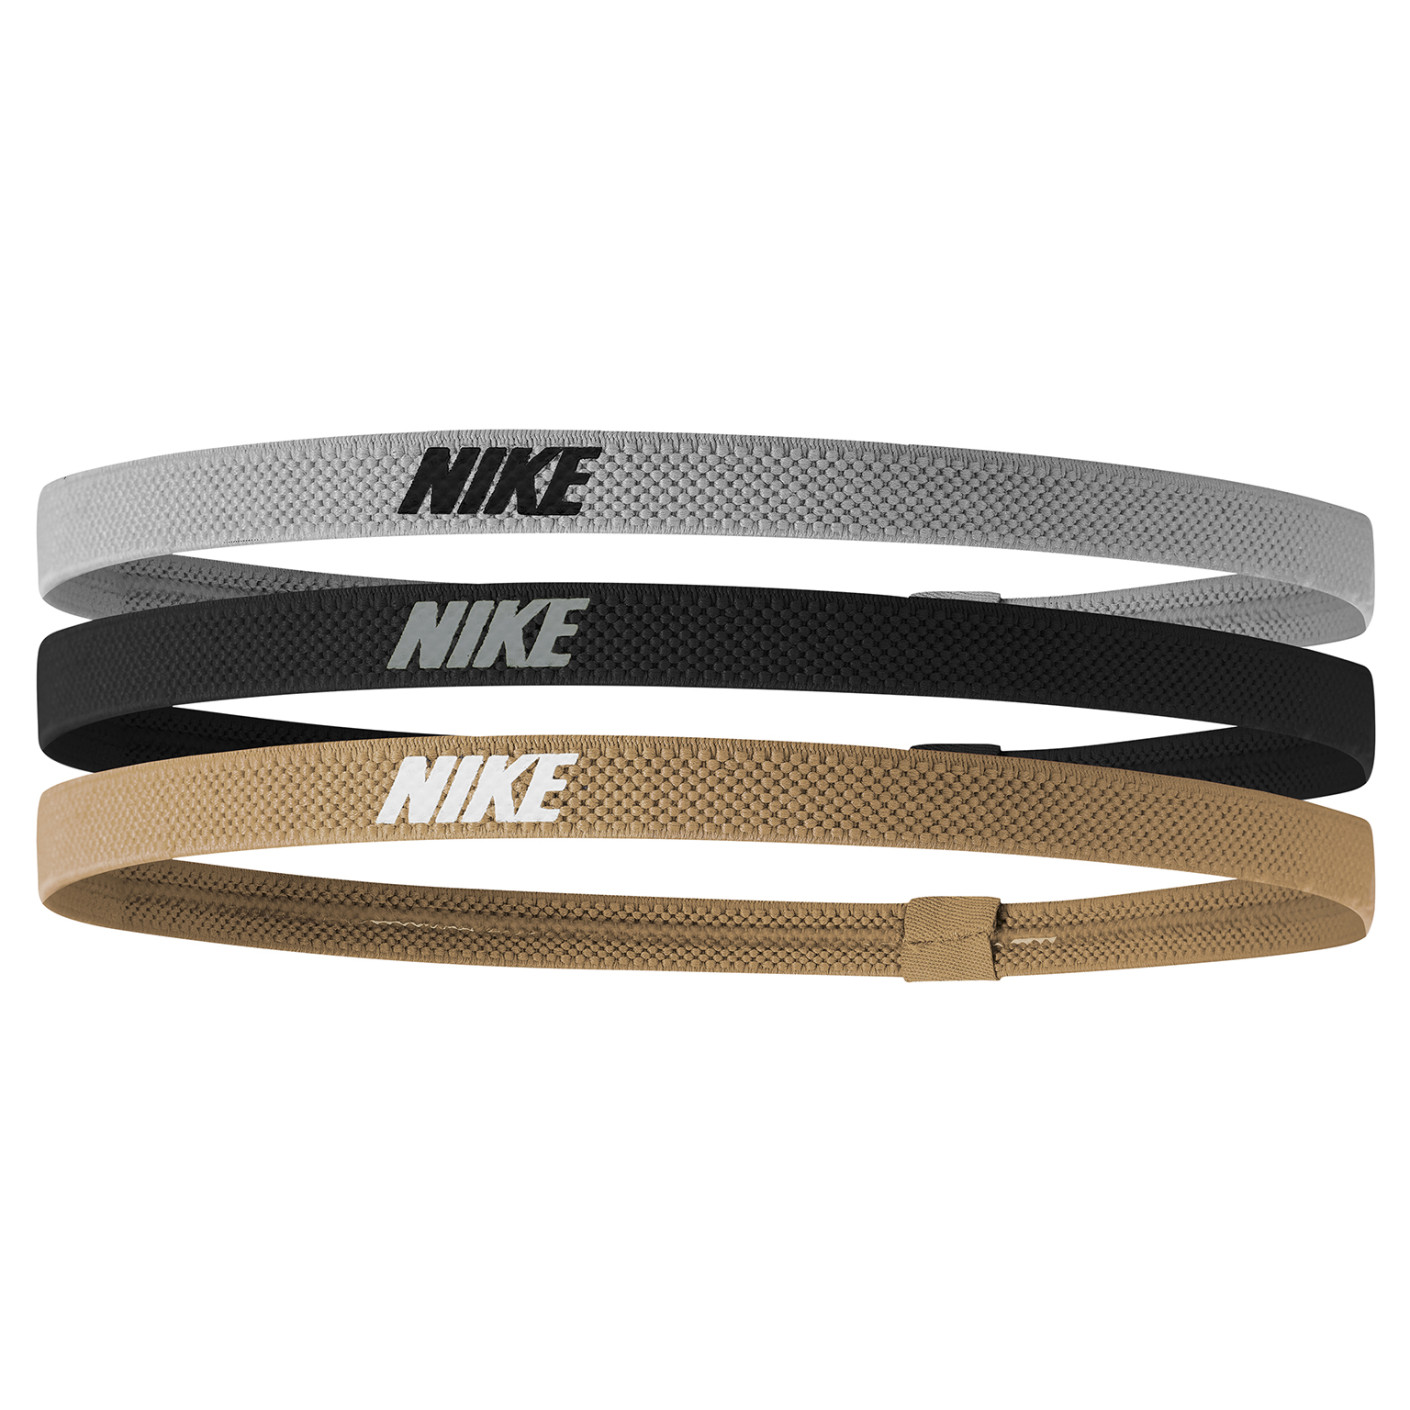 Bandeaux élastiques Nike 2.0 - Pack de 3 - Argent/noir/or